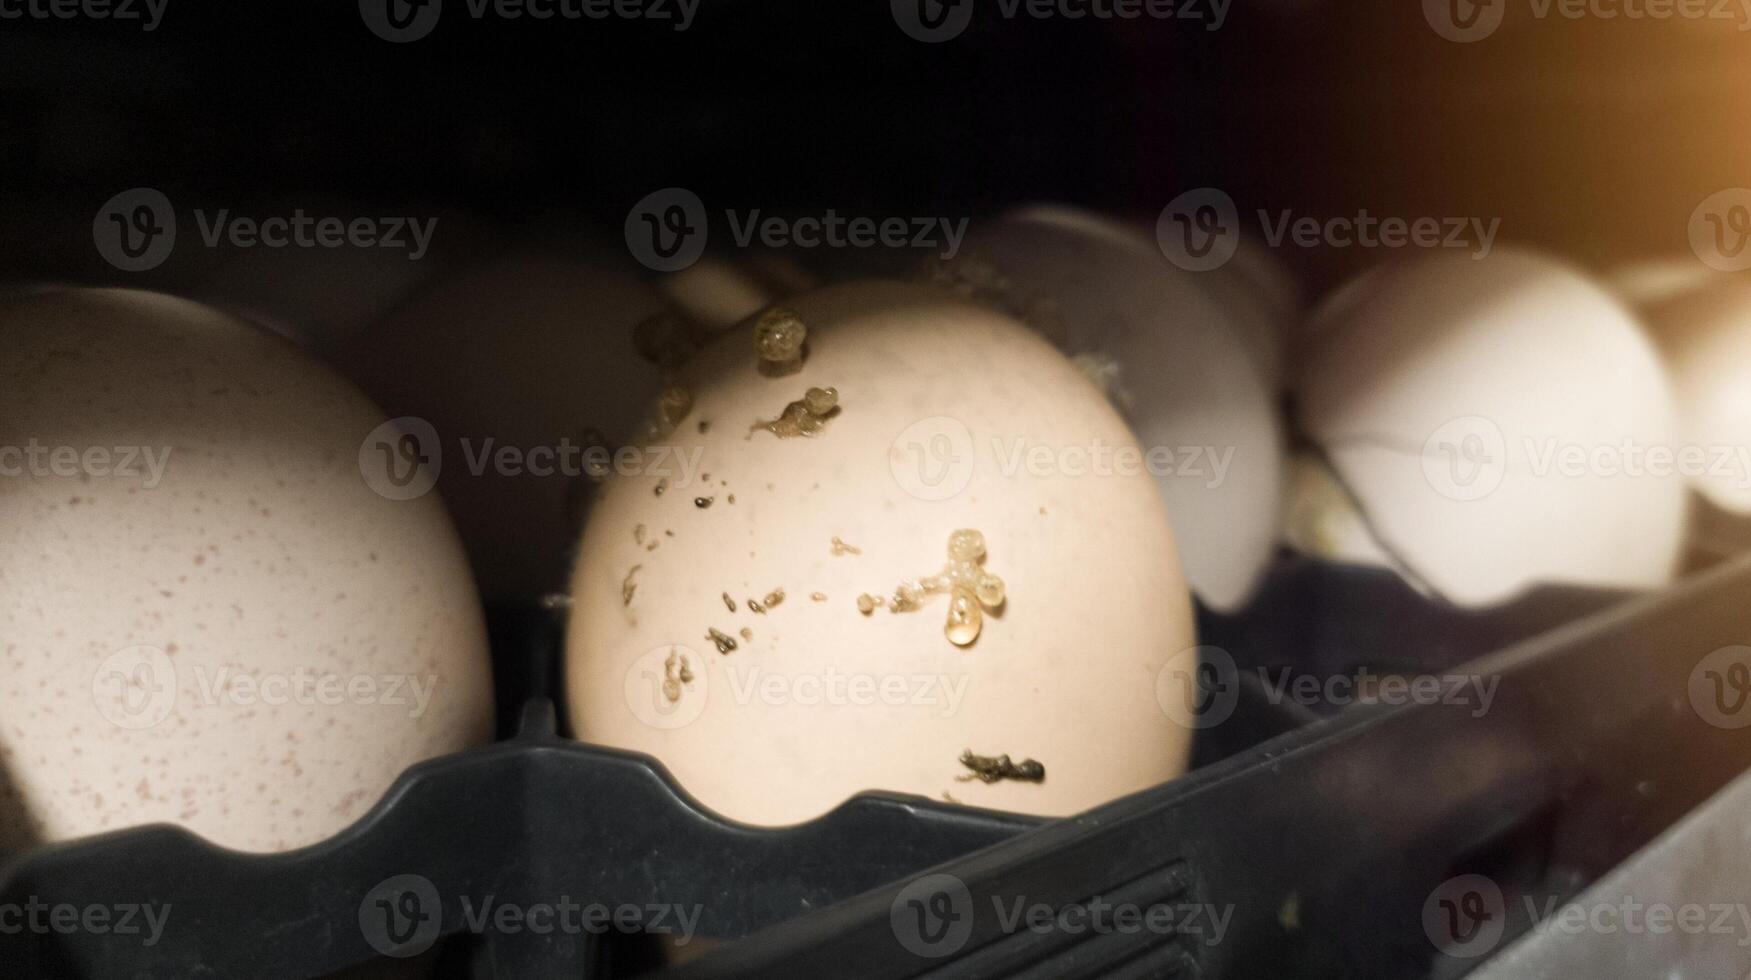 de ontploffen eieren Aan de dienblad trolley.de ei ontploft in de dienblad omdat van bacterie of schimmels dat invoeren de eierschaal. eieren ontploffen omdat ze zijn blootgesteld naar bacteriën. foto